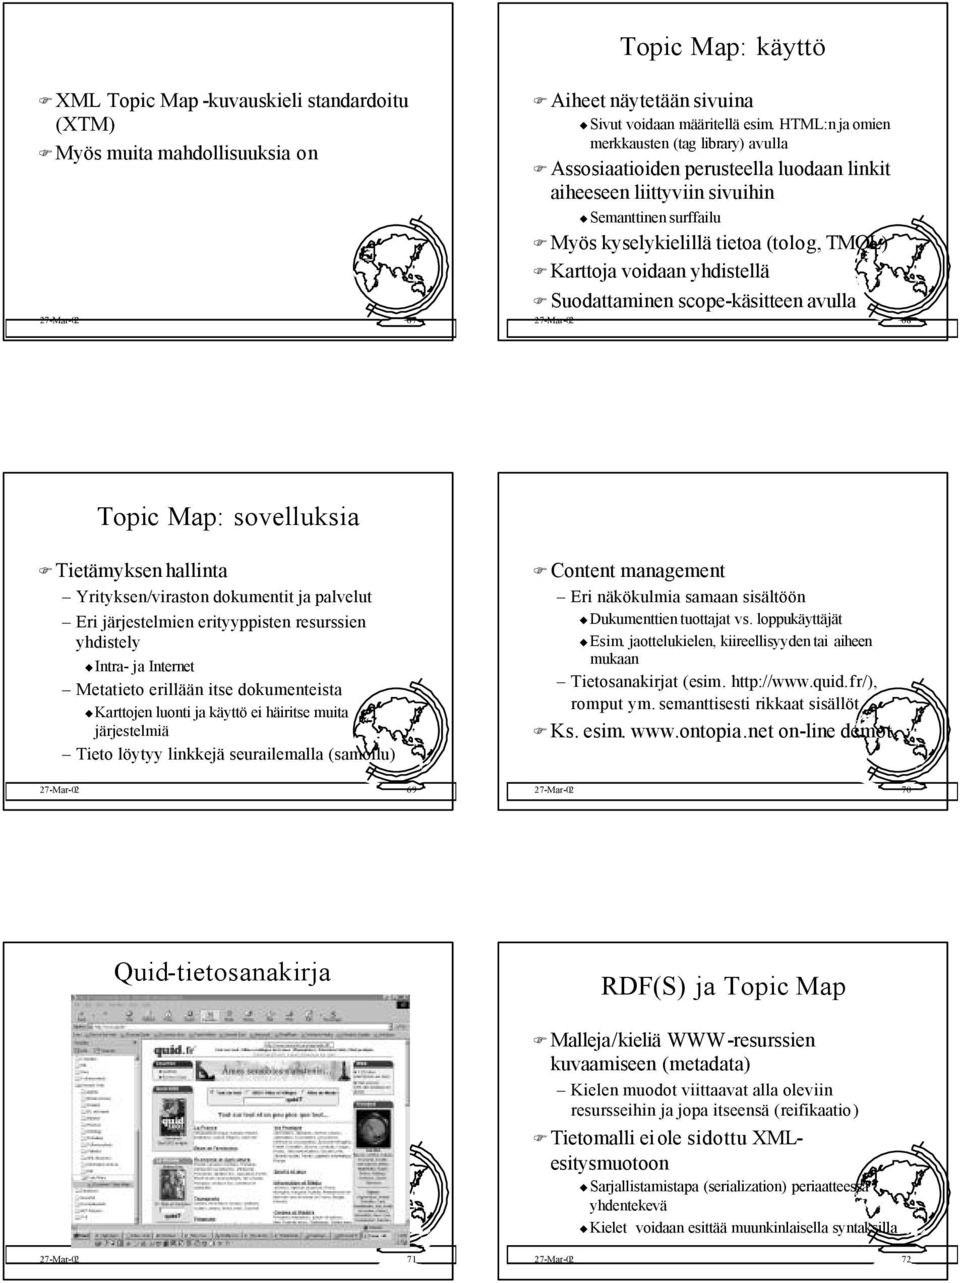 voidaan yhdistellä Suodattaminen scope-käsitteen avulla 27-Mar-02 68 Topic Map: sovelluksia Tietämyksen hallinta Yrityksen/viraston dokumentit ja palvelut Eri järjestelmien erityyppisten resurssien